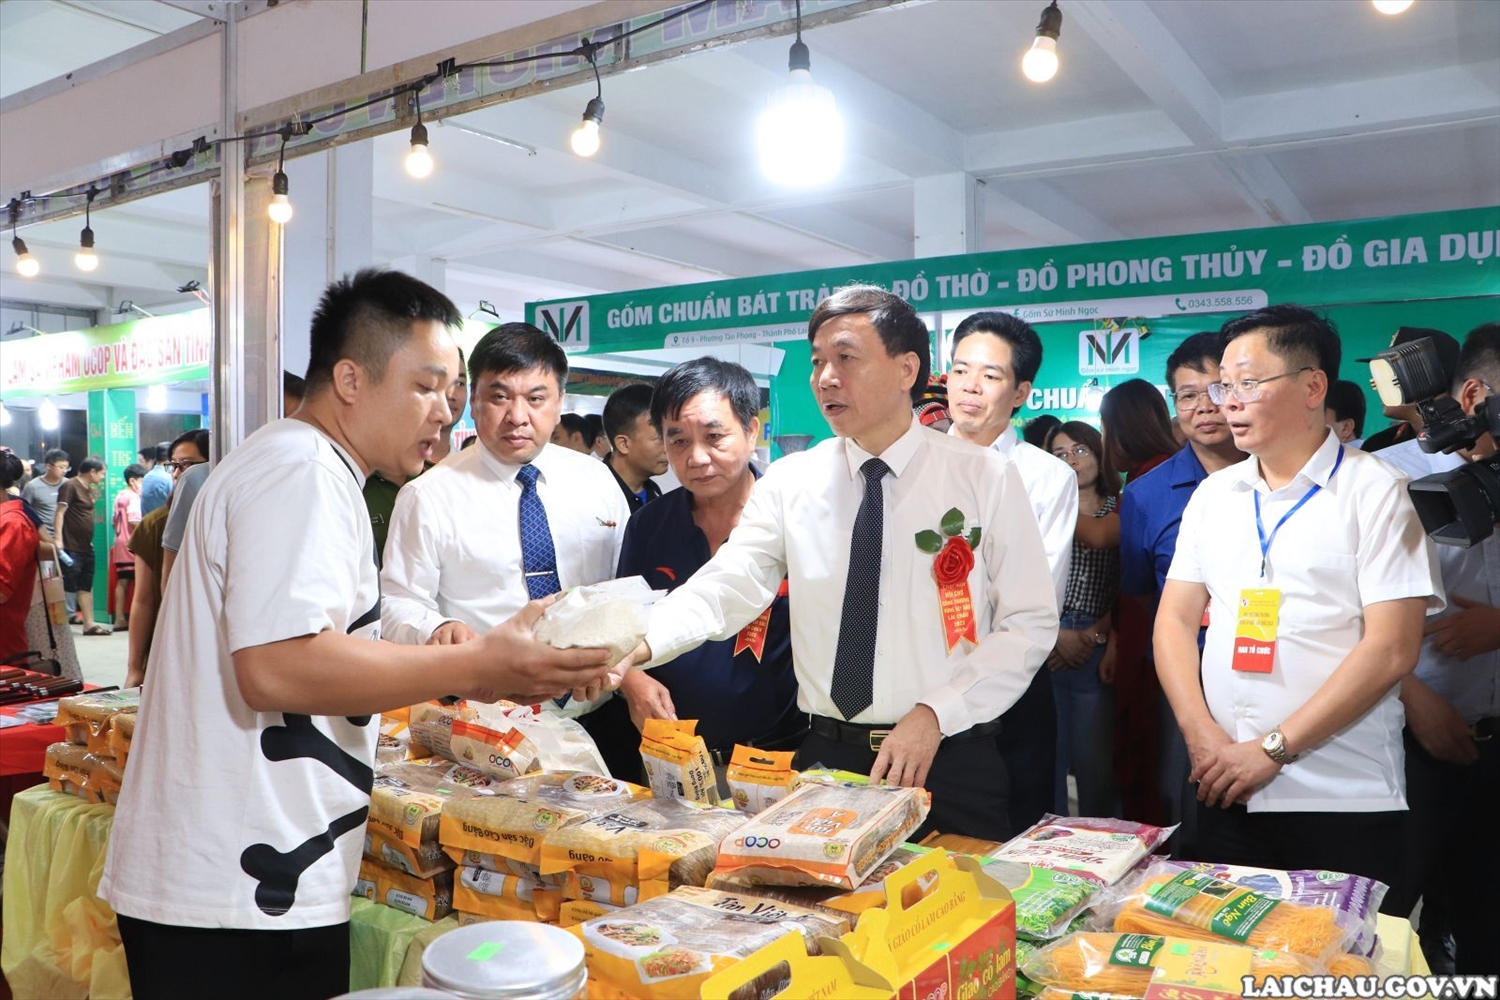 Chủ tịch UBND tỉnh Lai Châu Lê Văn Lương (đứng giữa) thăm quan gian hàng của tỉnh Lai Châu tại Hội chợ Hội chợ Công thương vùng Tây Bắc - Lai Châu 2023. (Ảnh: laichau.gov.vn)